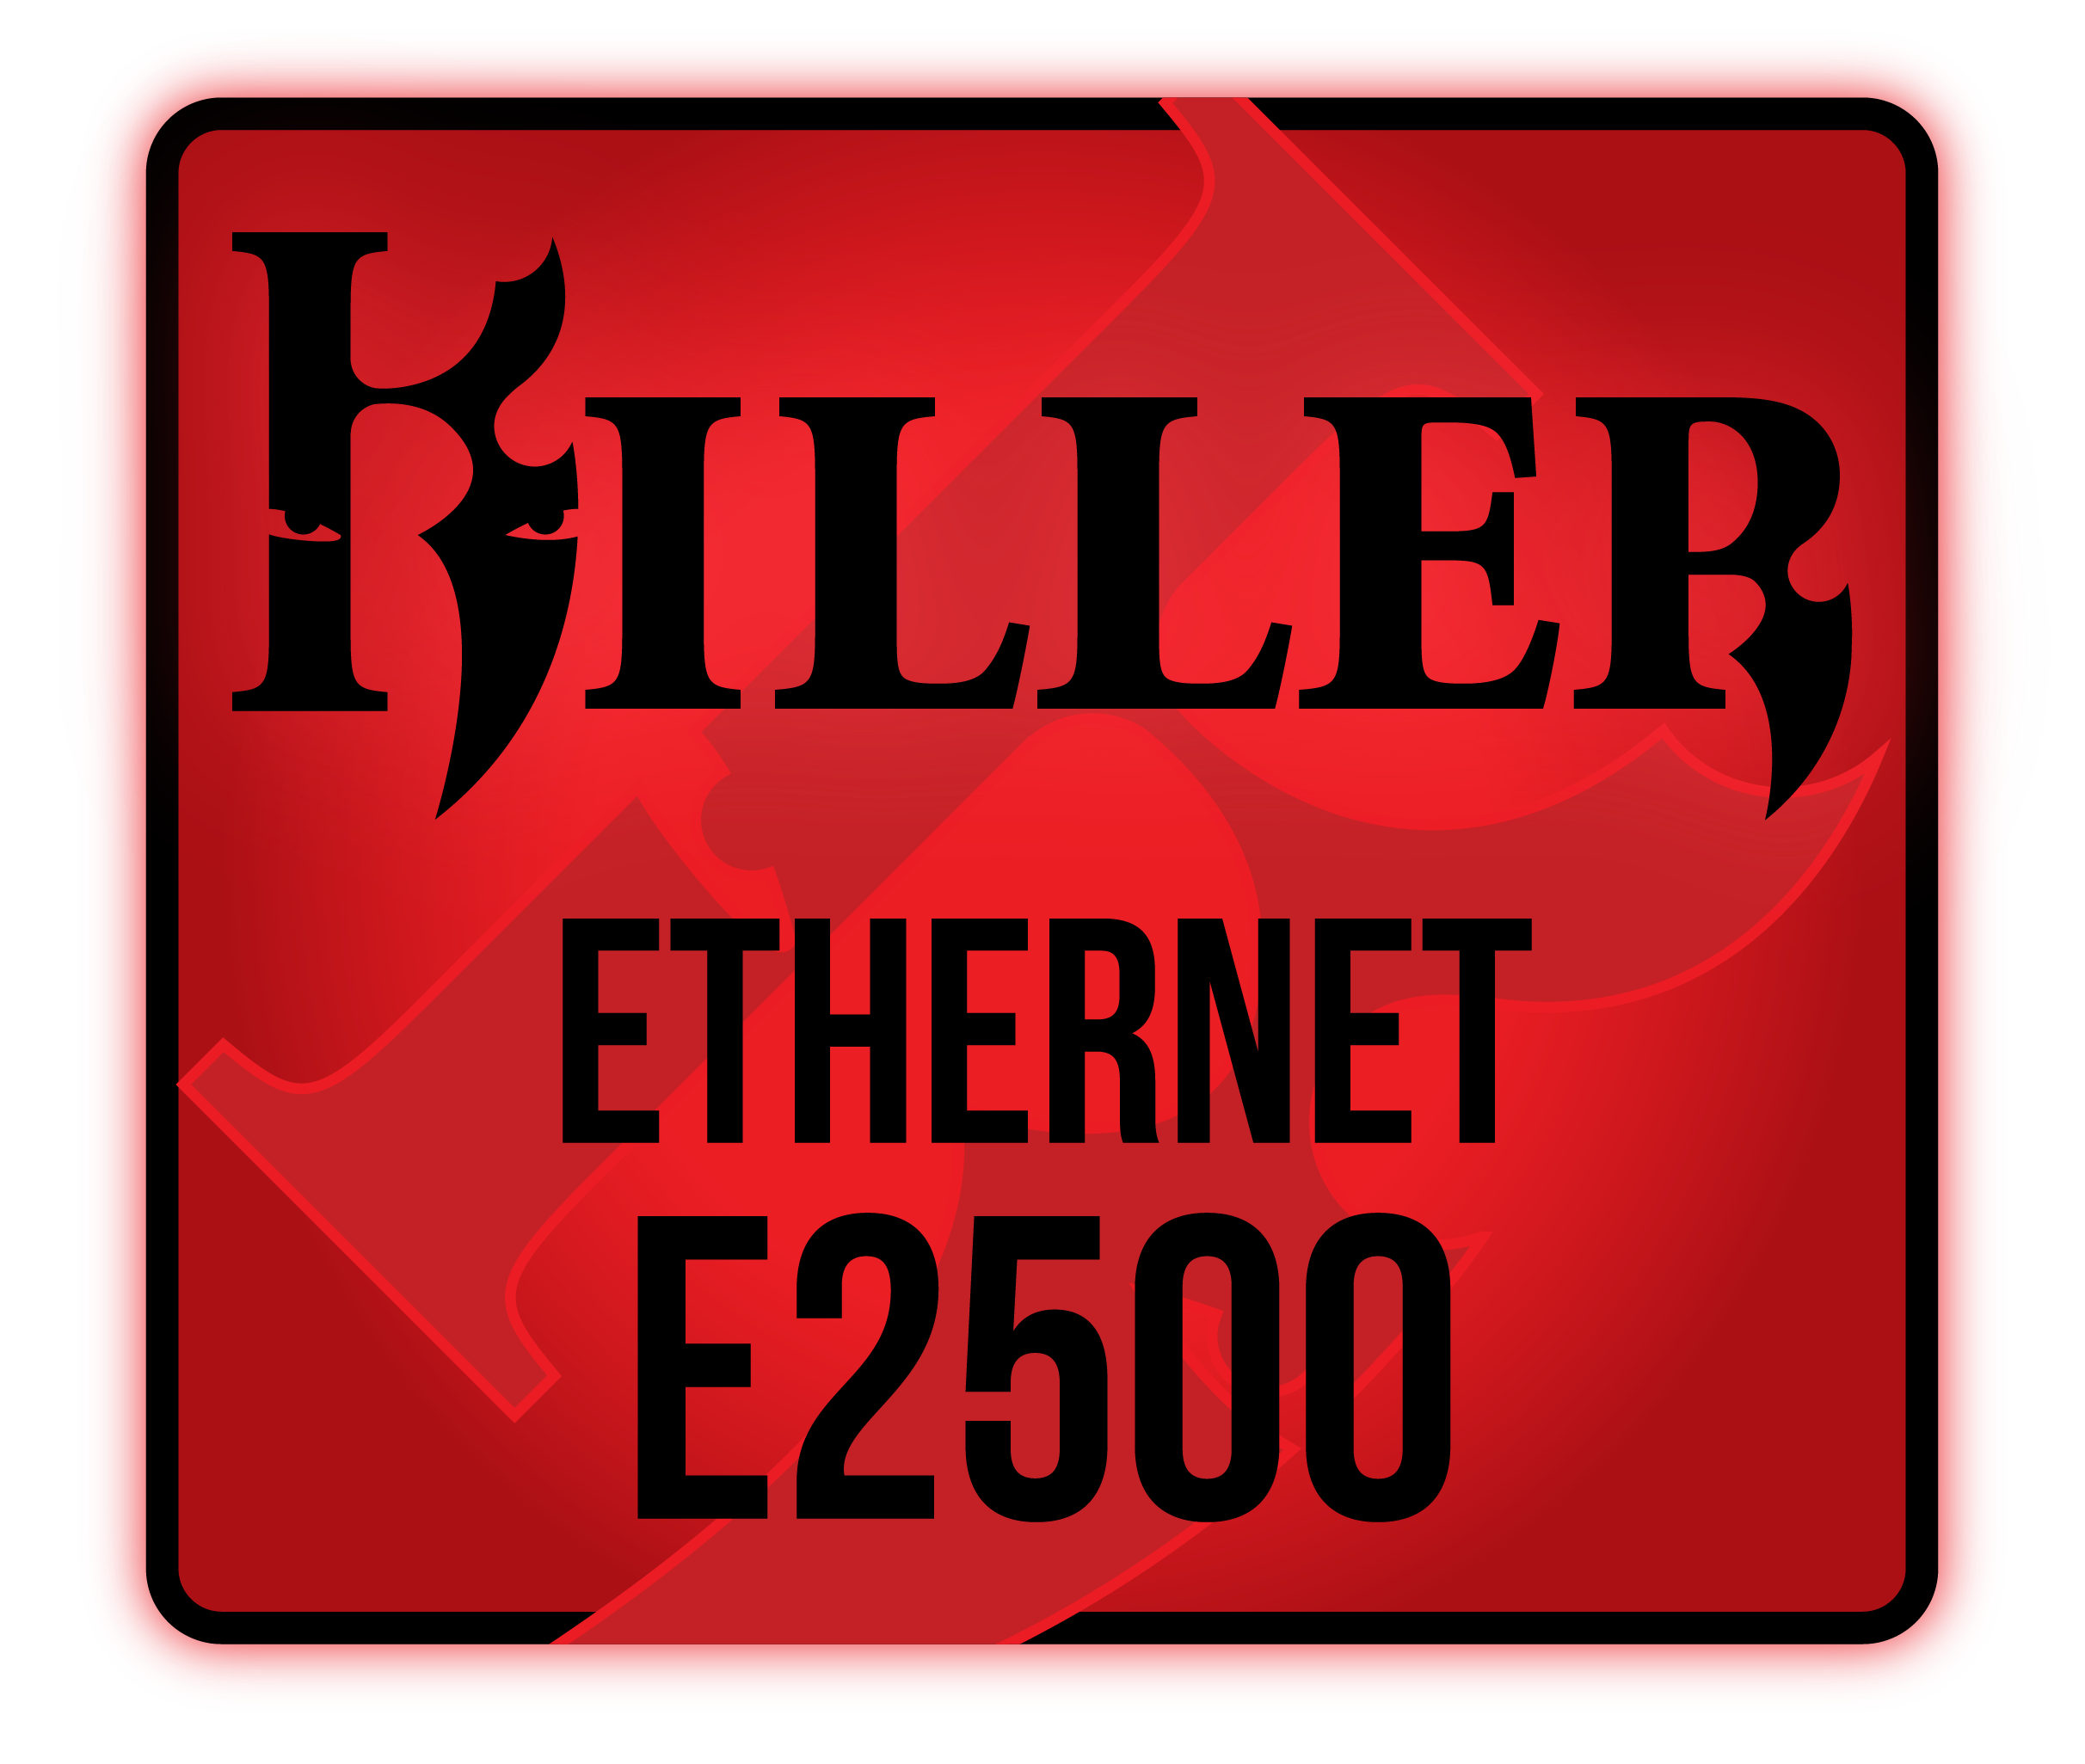 Killer Ehternet E2500